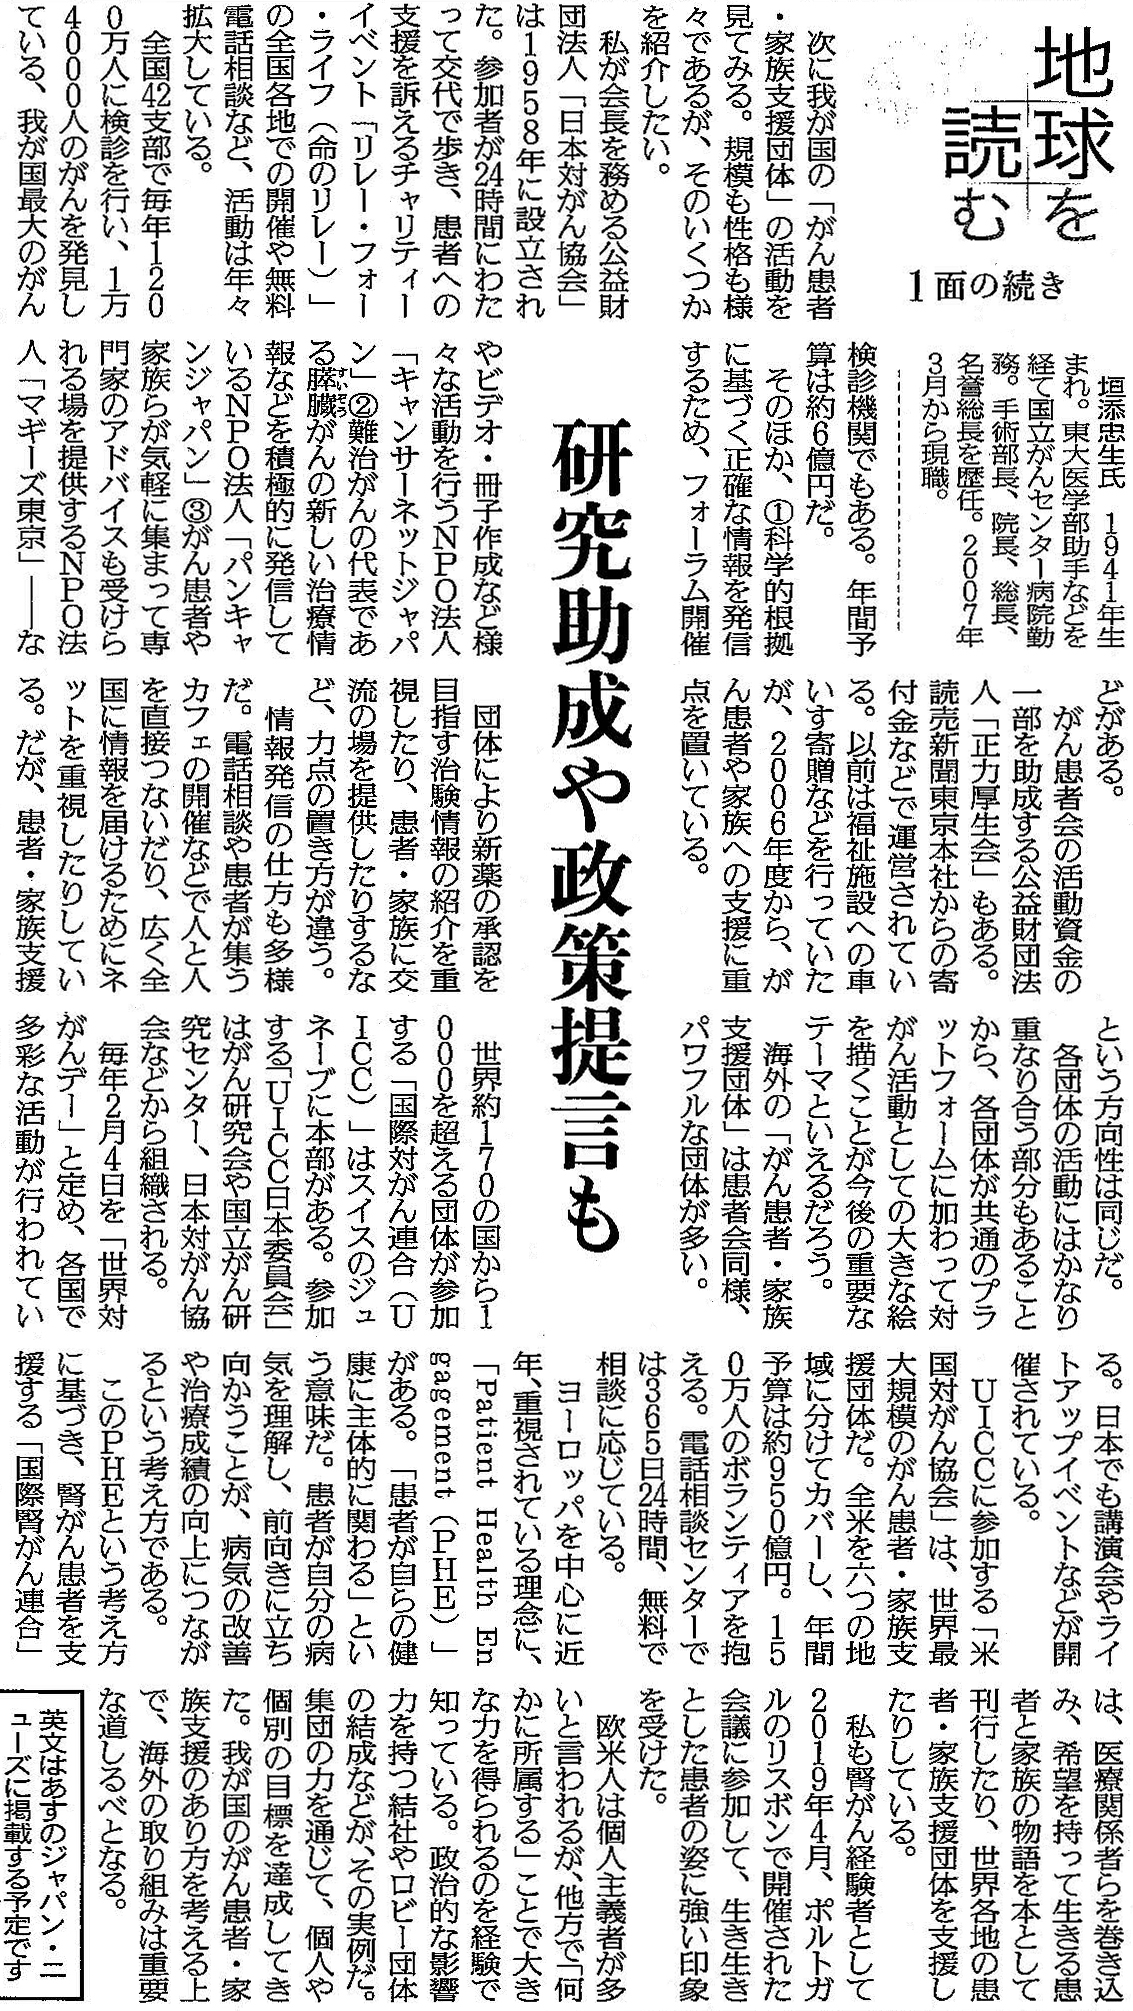 読売新聞 2020年1月27日 掲載記事